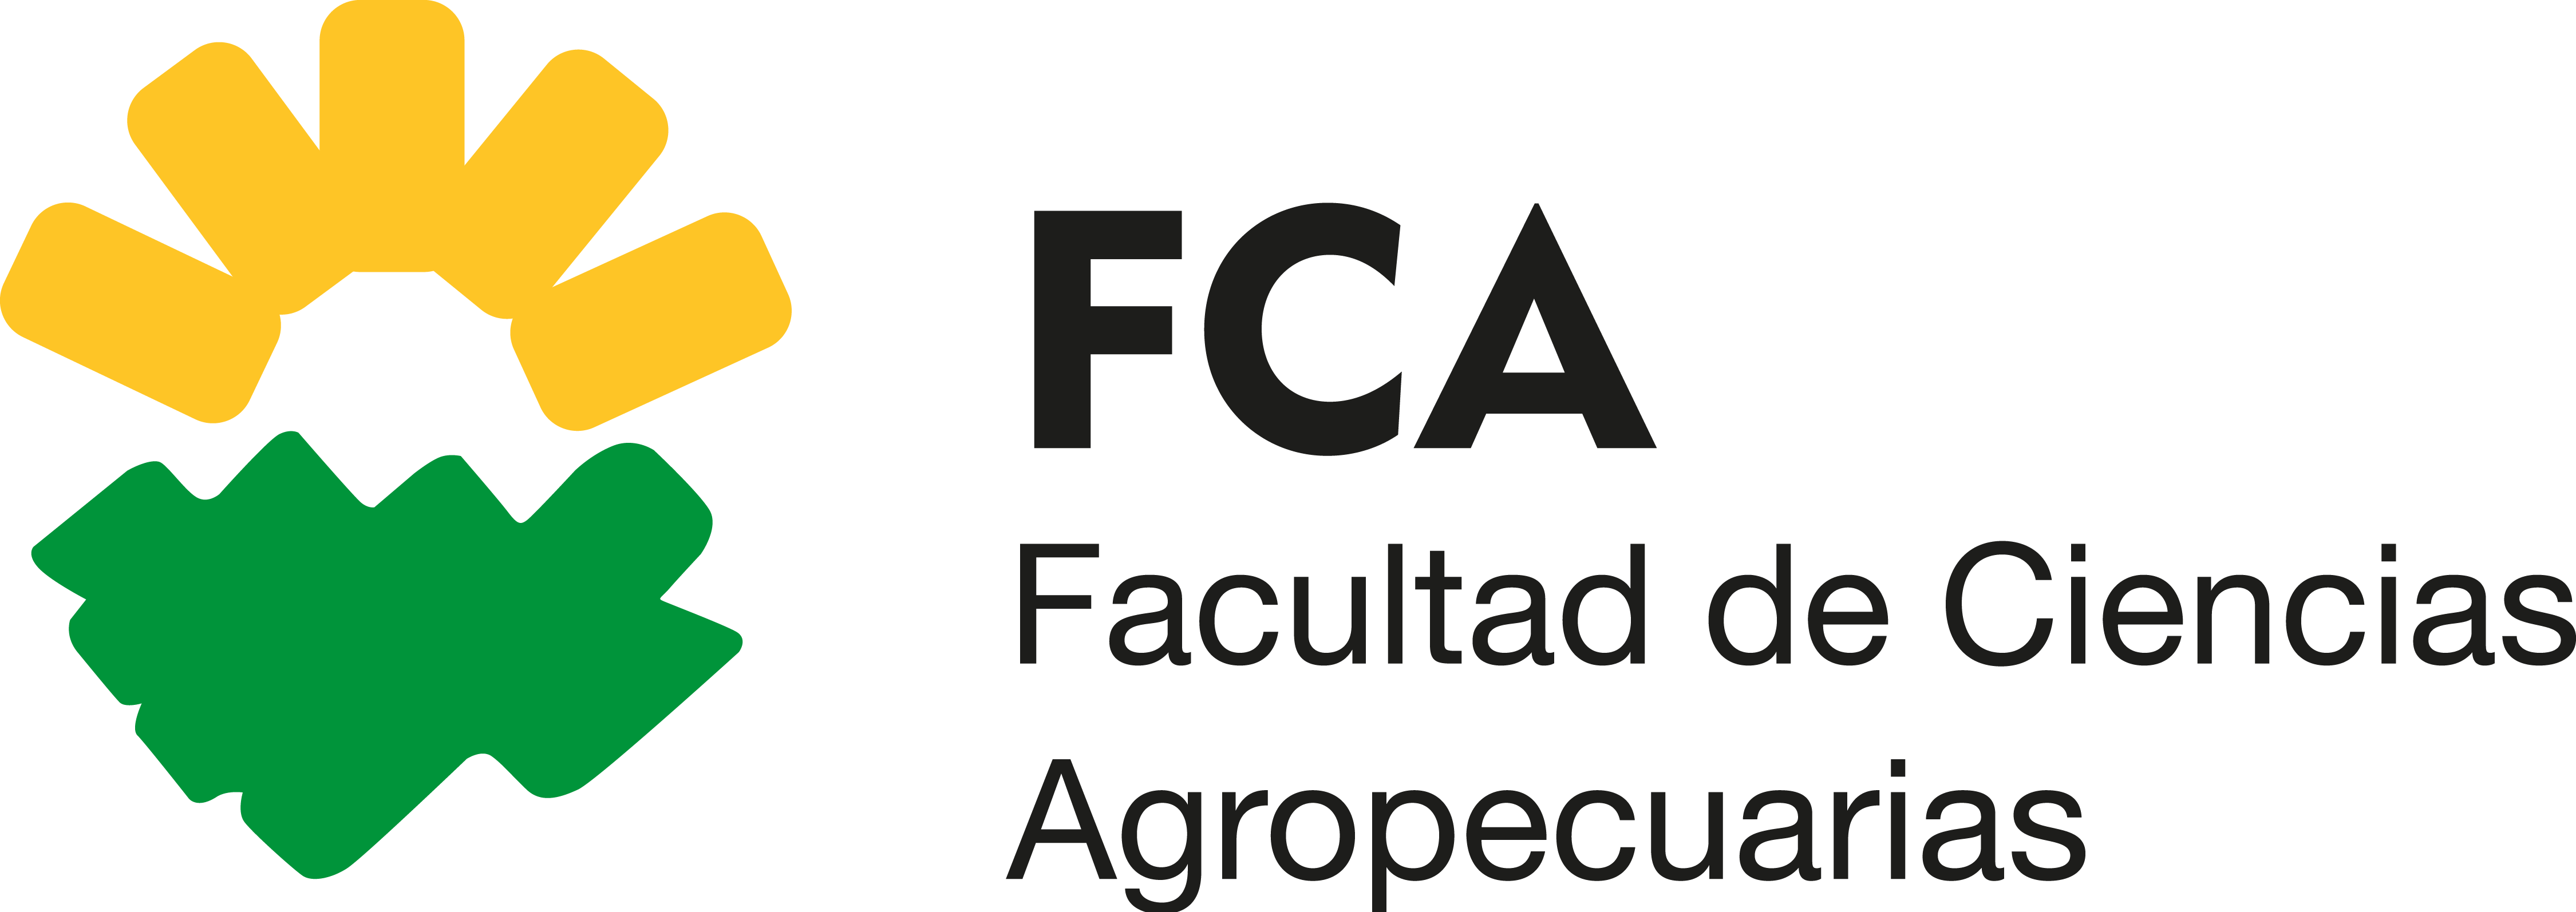 Logo FCA color